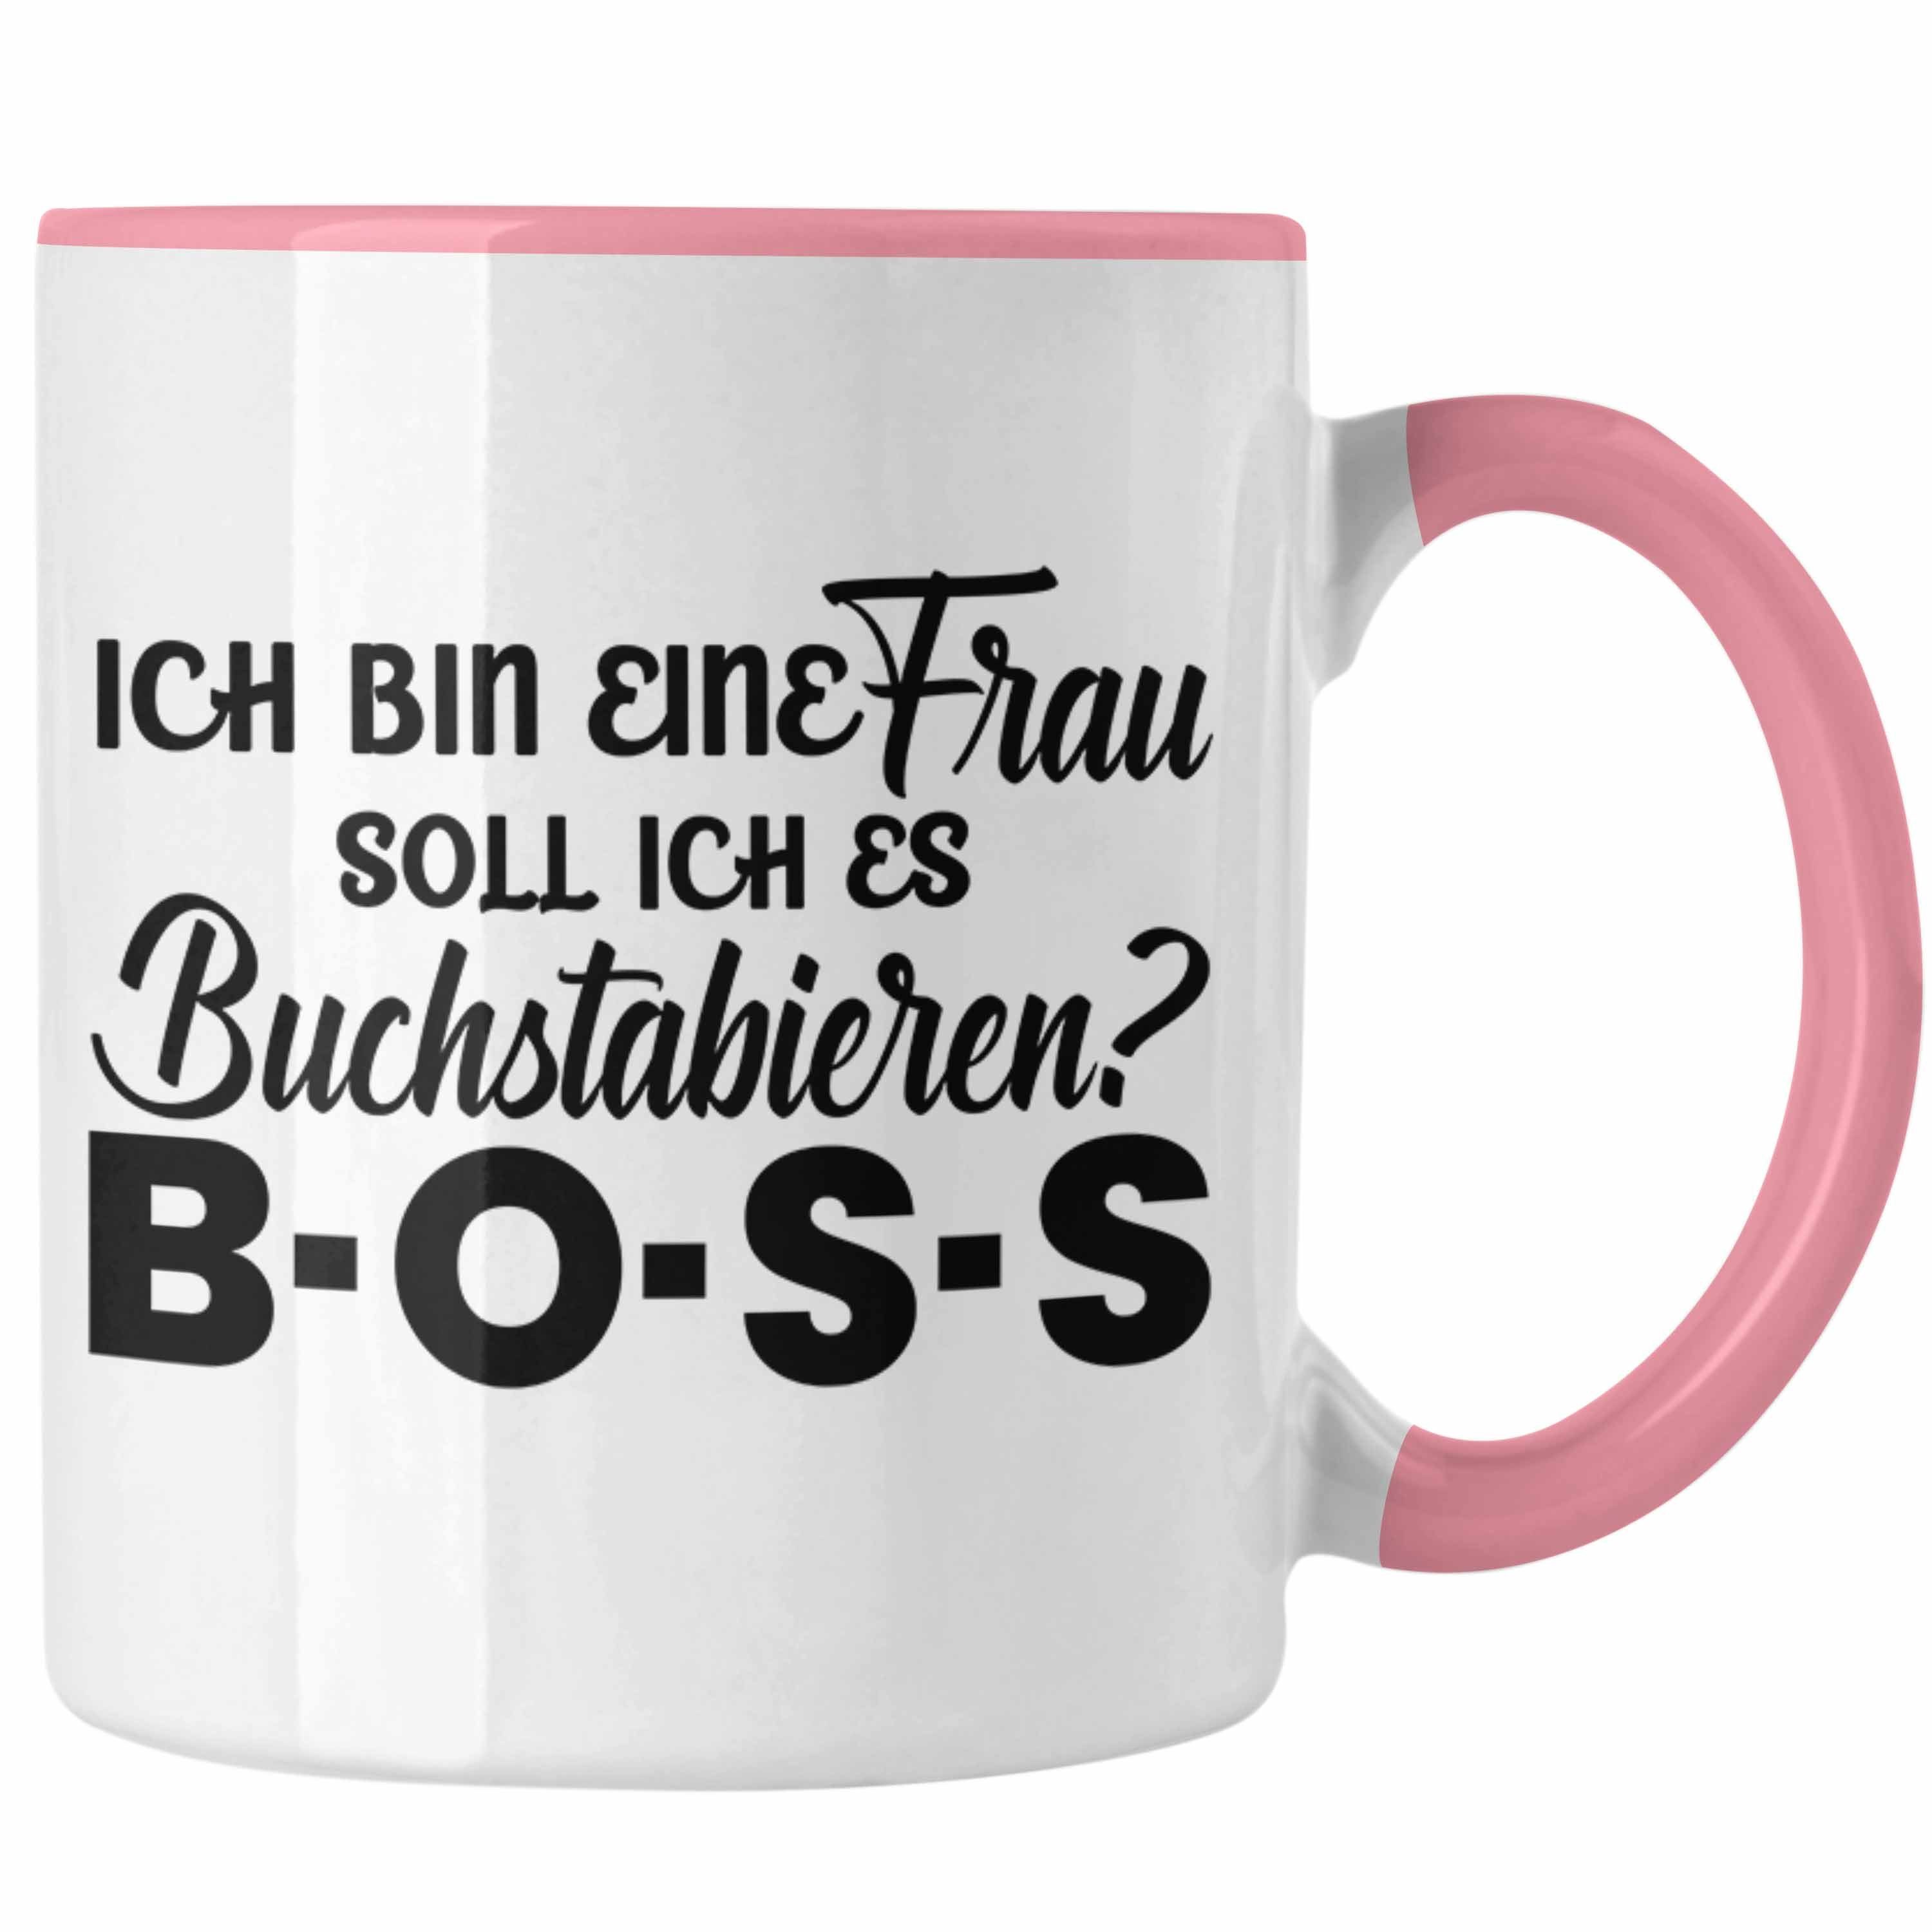 Trendation Tasse Trendation - Frauen Tasse Geschenk Boss Tasse mit Spruch für Frauen Frauentag Starke Frau Rosa